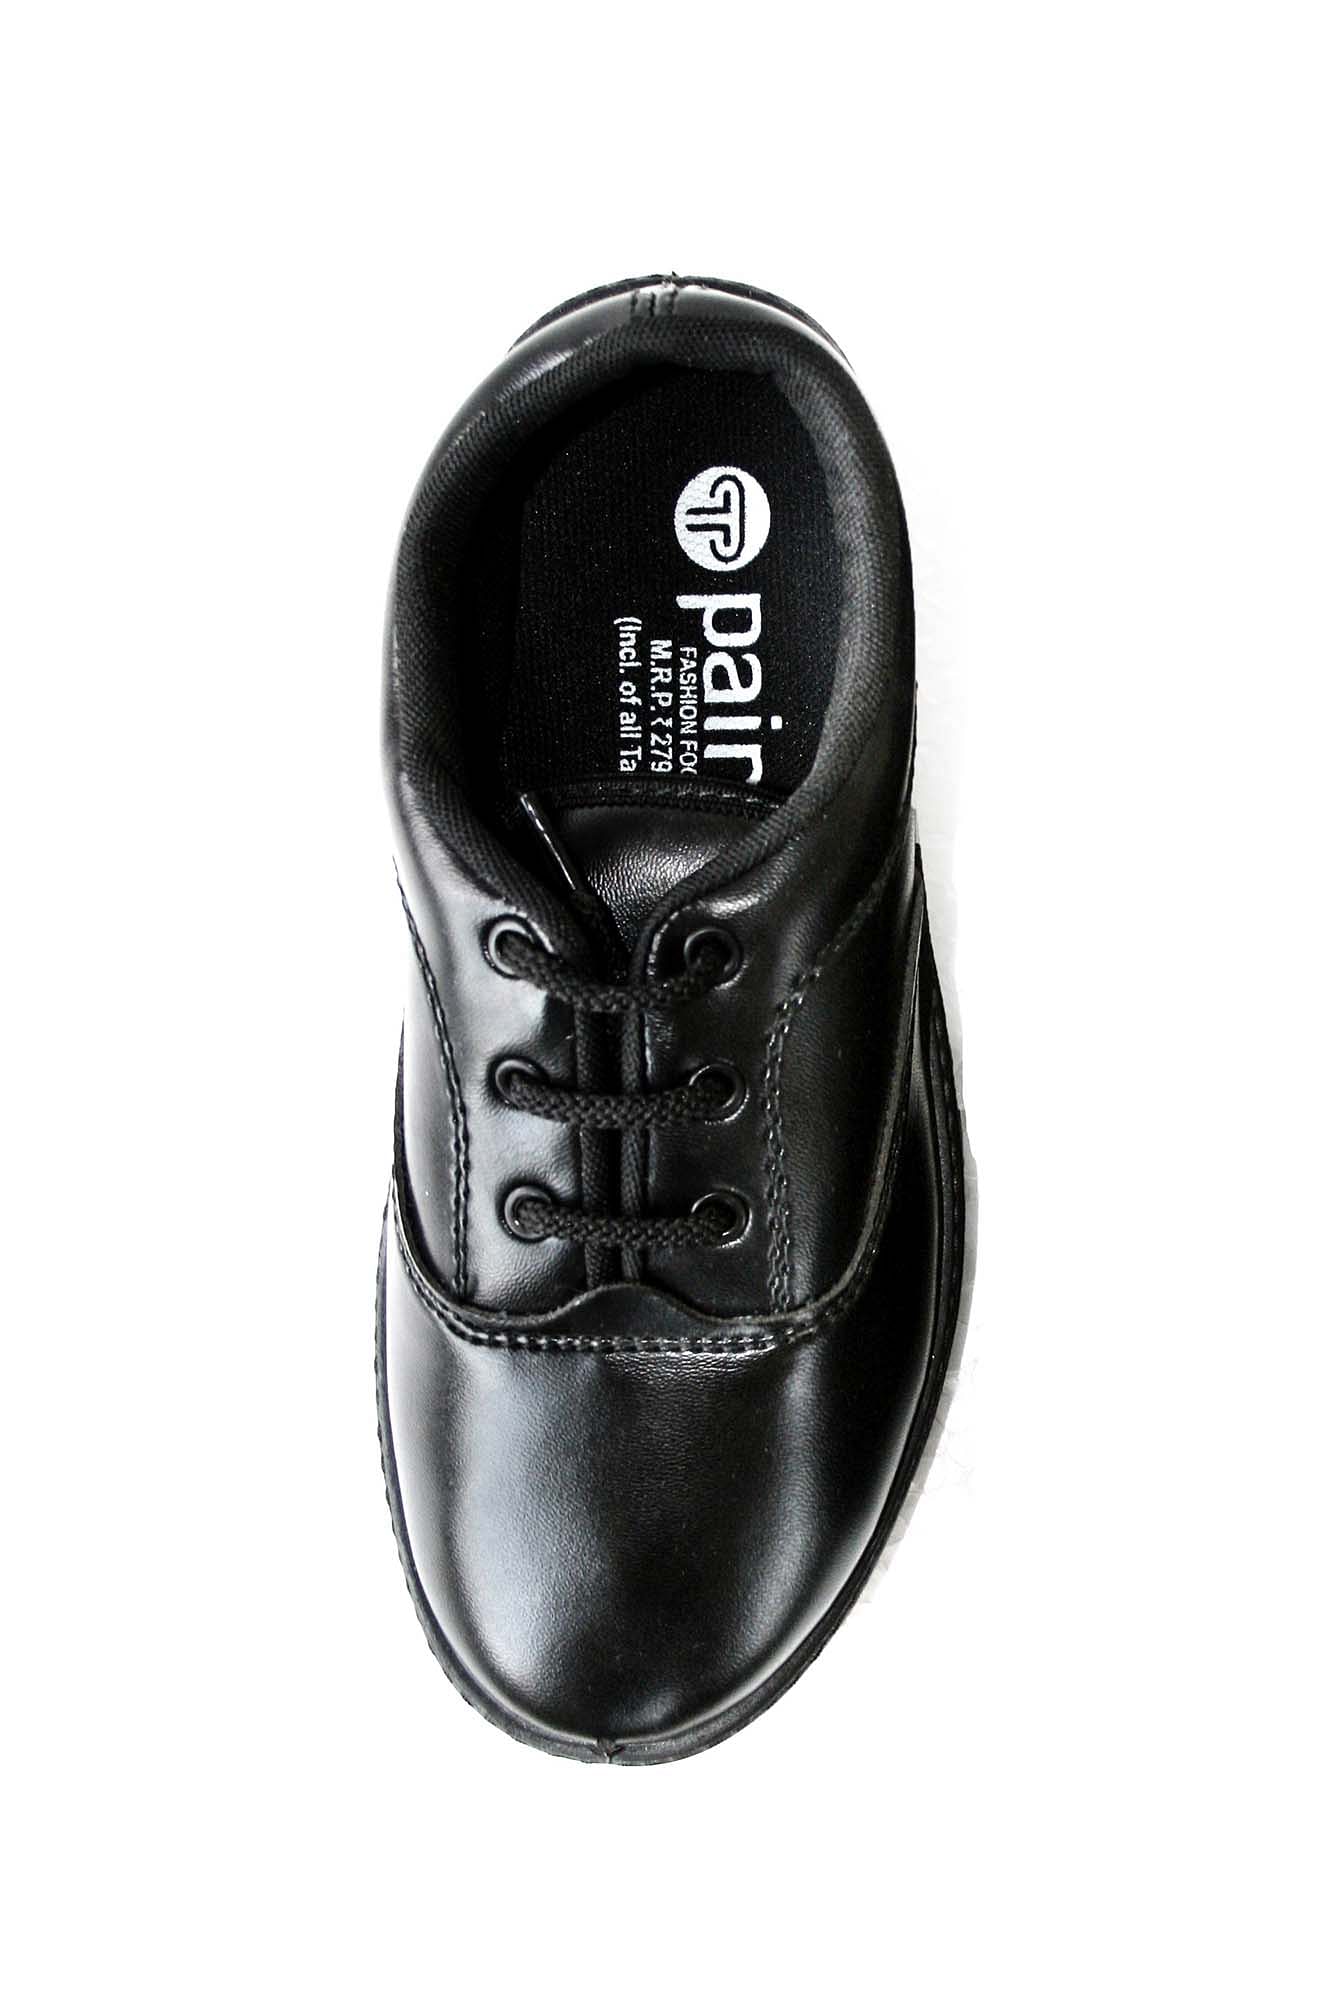 Pair-it Boys PVC School Shoe - Size-4,5 - Color Black